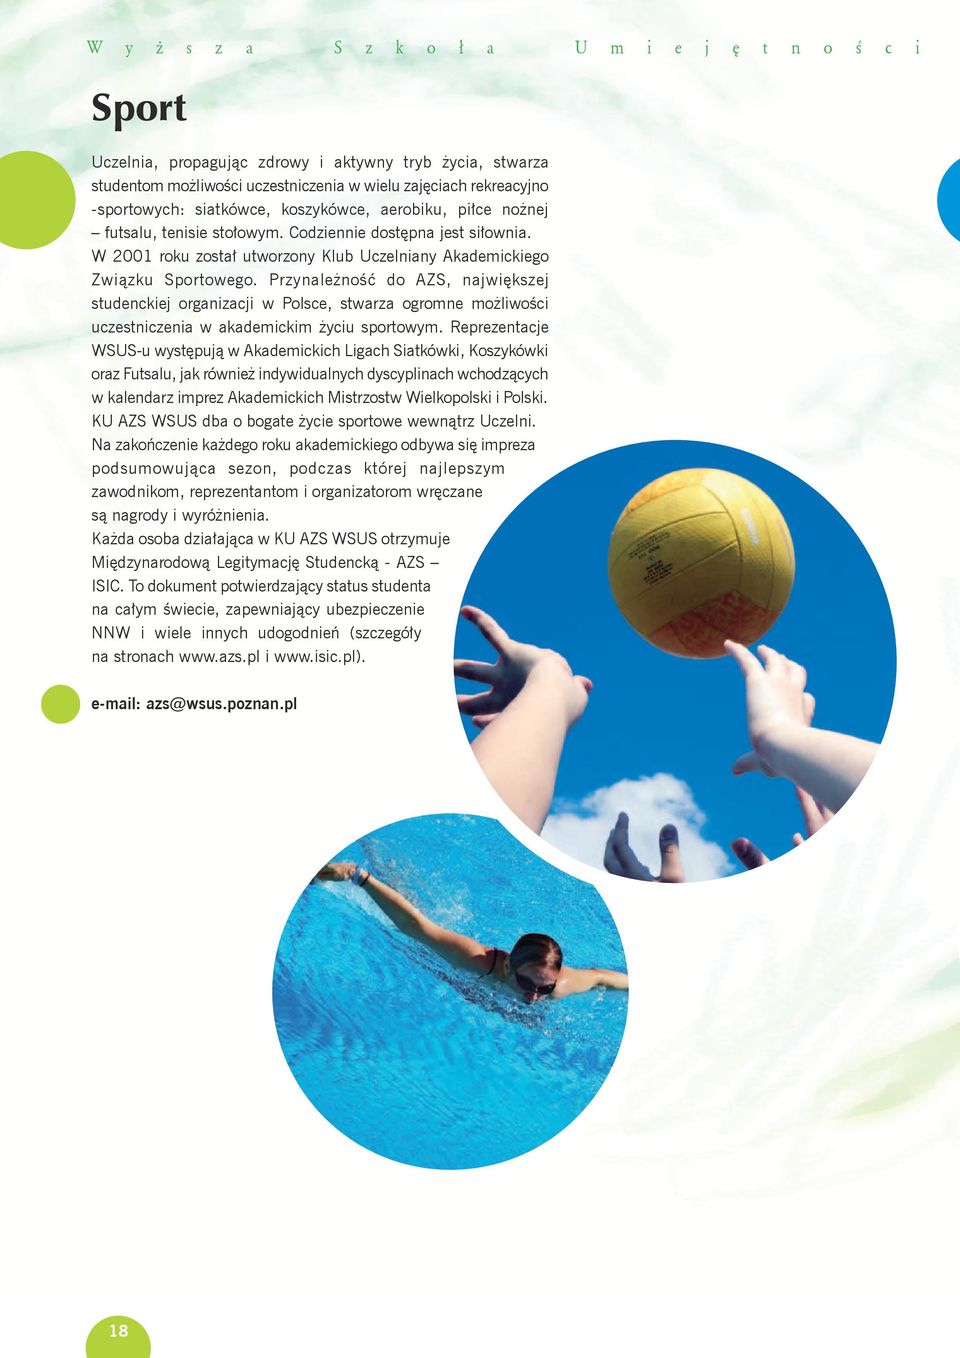 Przynależność do AZS, największej studenckiej organizacji w Polsce, stwarza ogromne możliwości uczestniczenia w akademickim życiu sportowym.